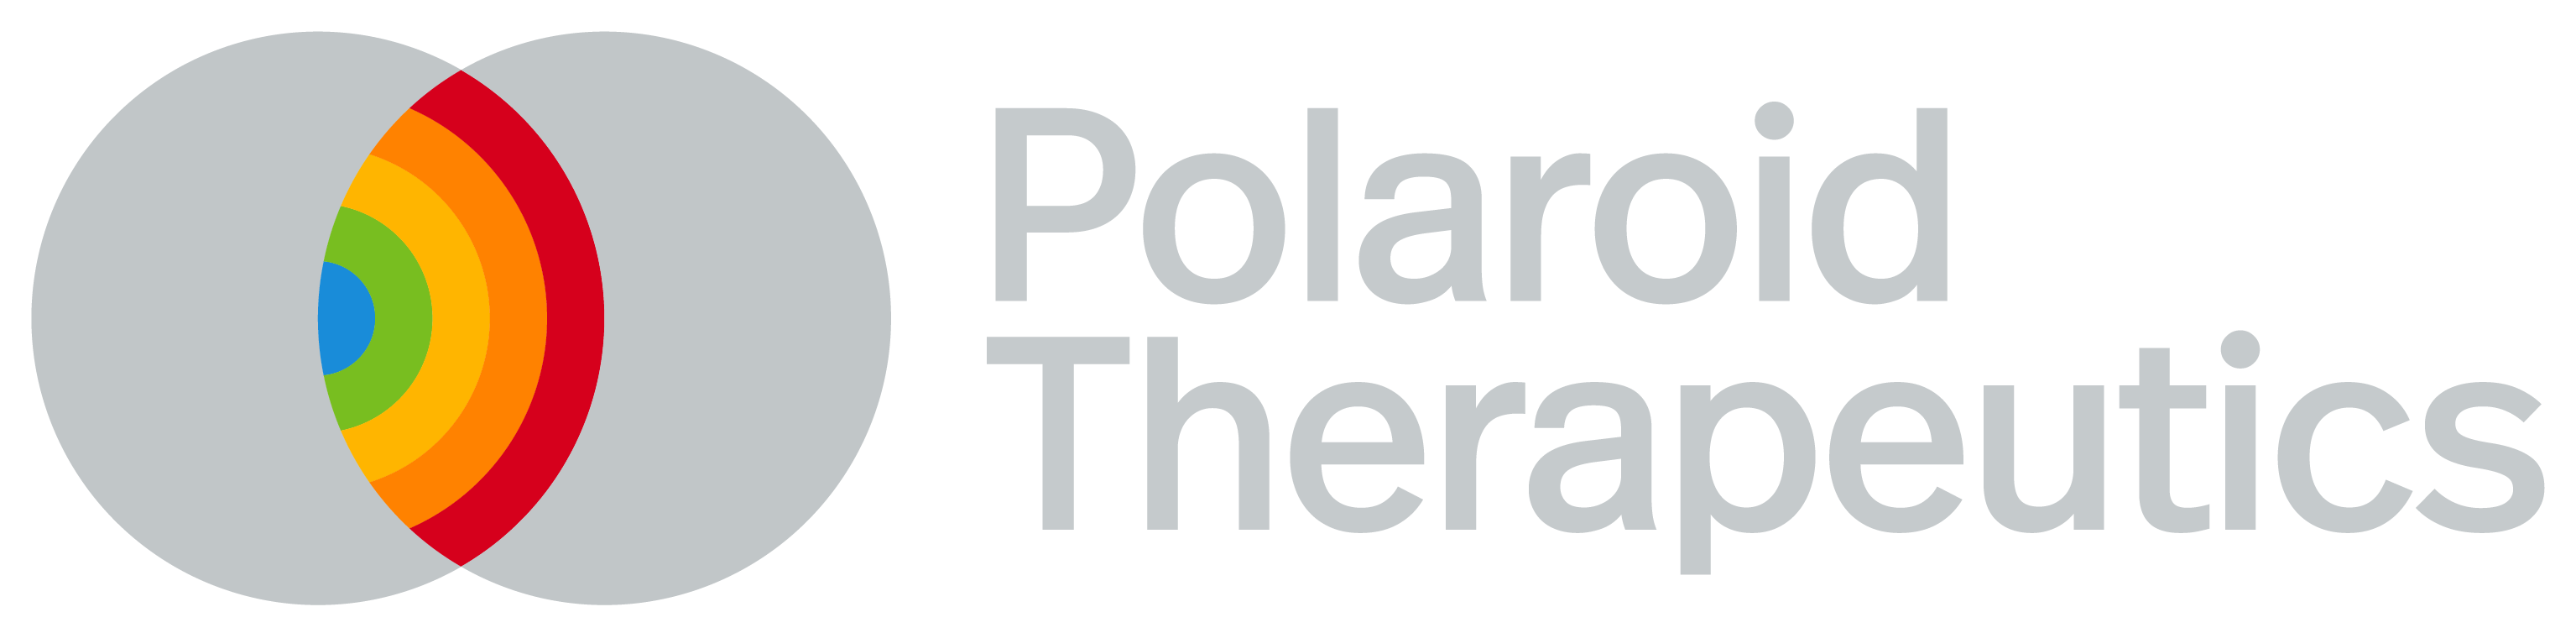 Polaroid Therapeutics logo